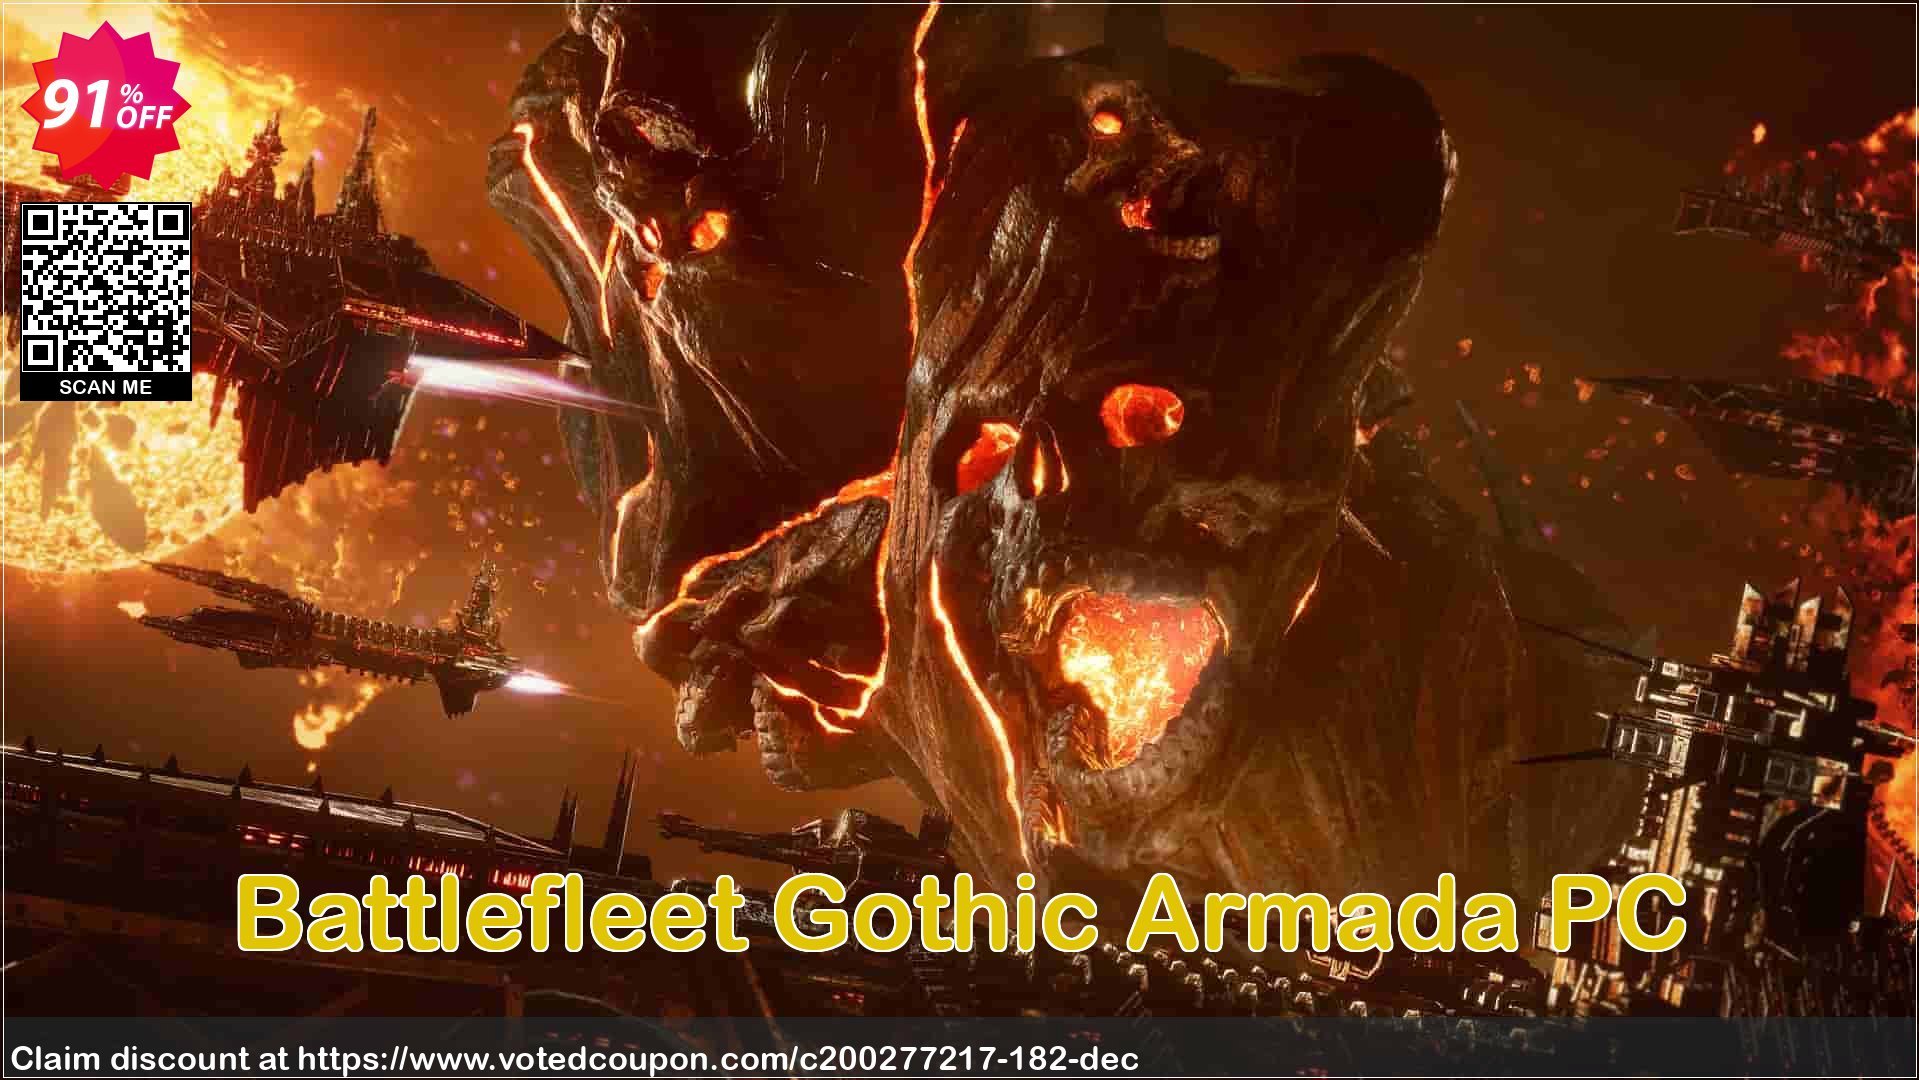 Battlefleet Gothic Armada PC voted-on promotion codes